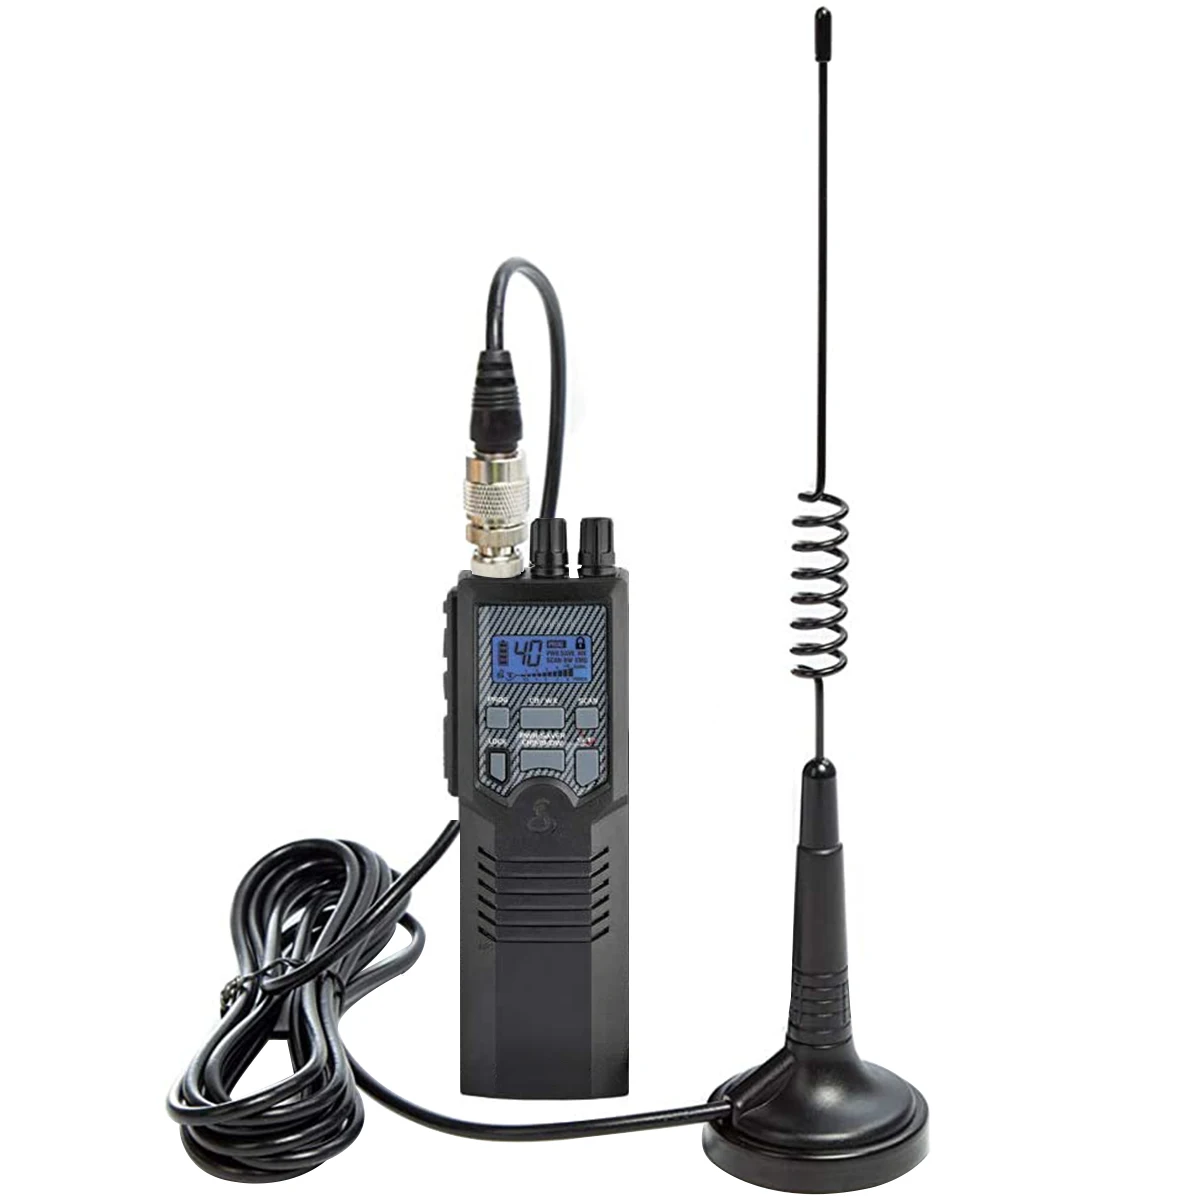 

Антенна ABBREE CB 27 МГц для портативного радиоприемника, полный комплект с магнитным основанием PL-259/разъемом BNC, мобильное/автомобильное радио